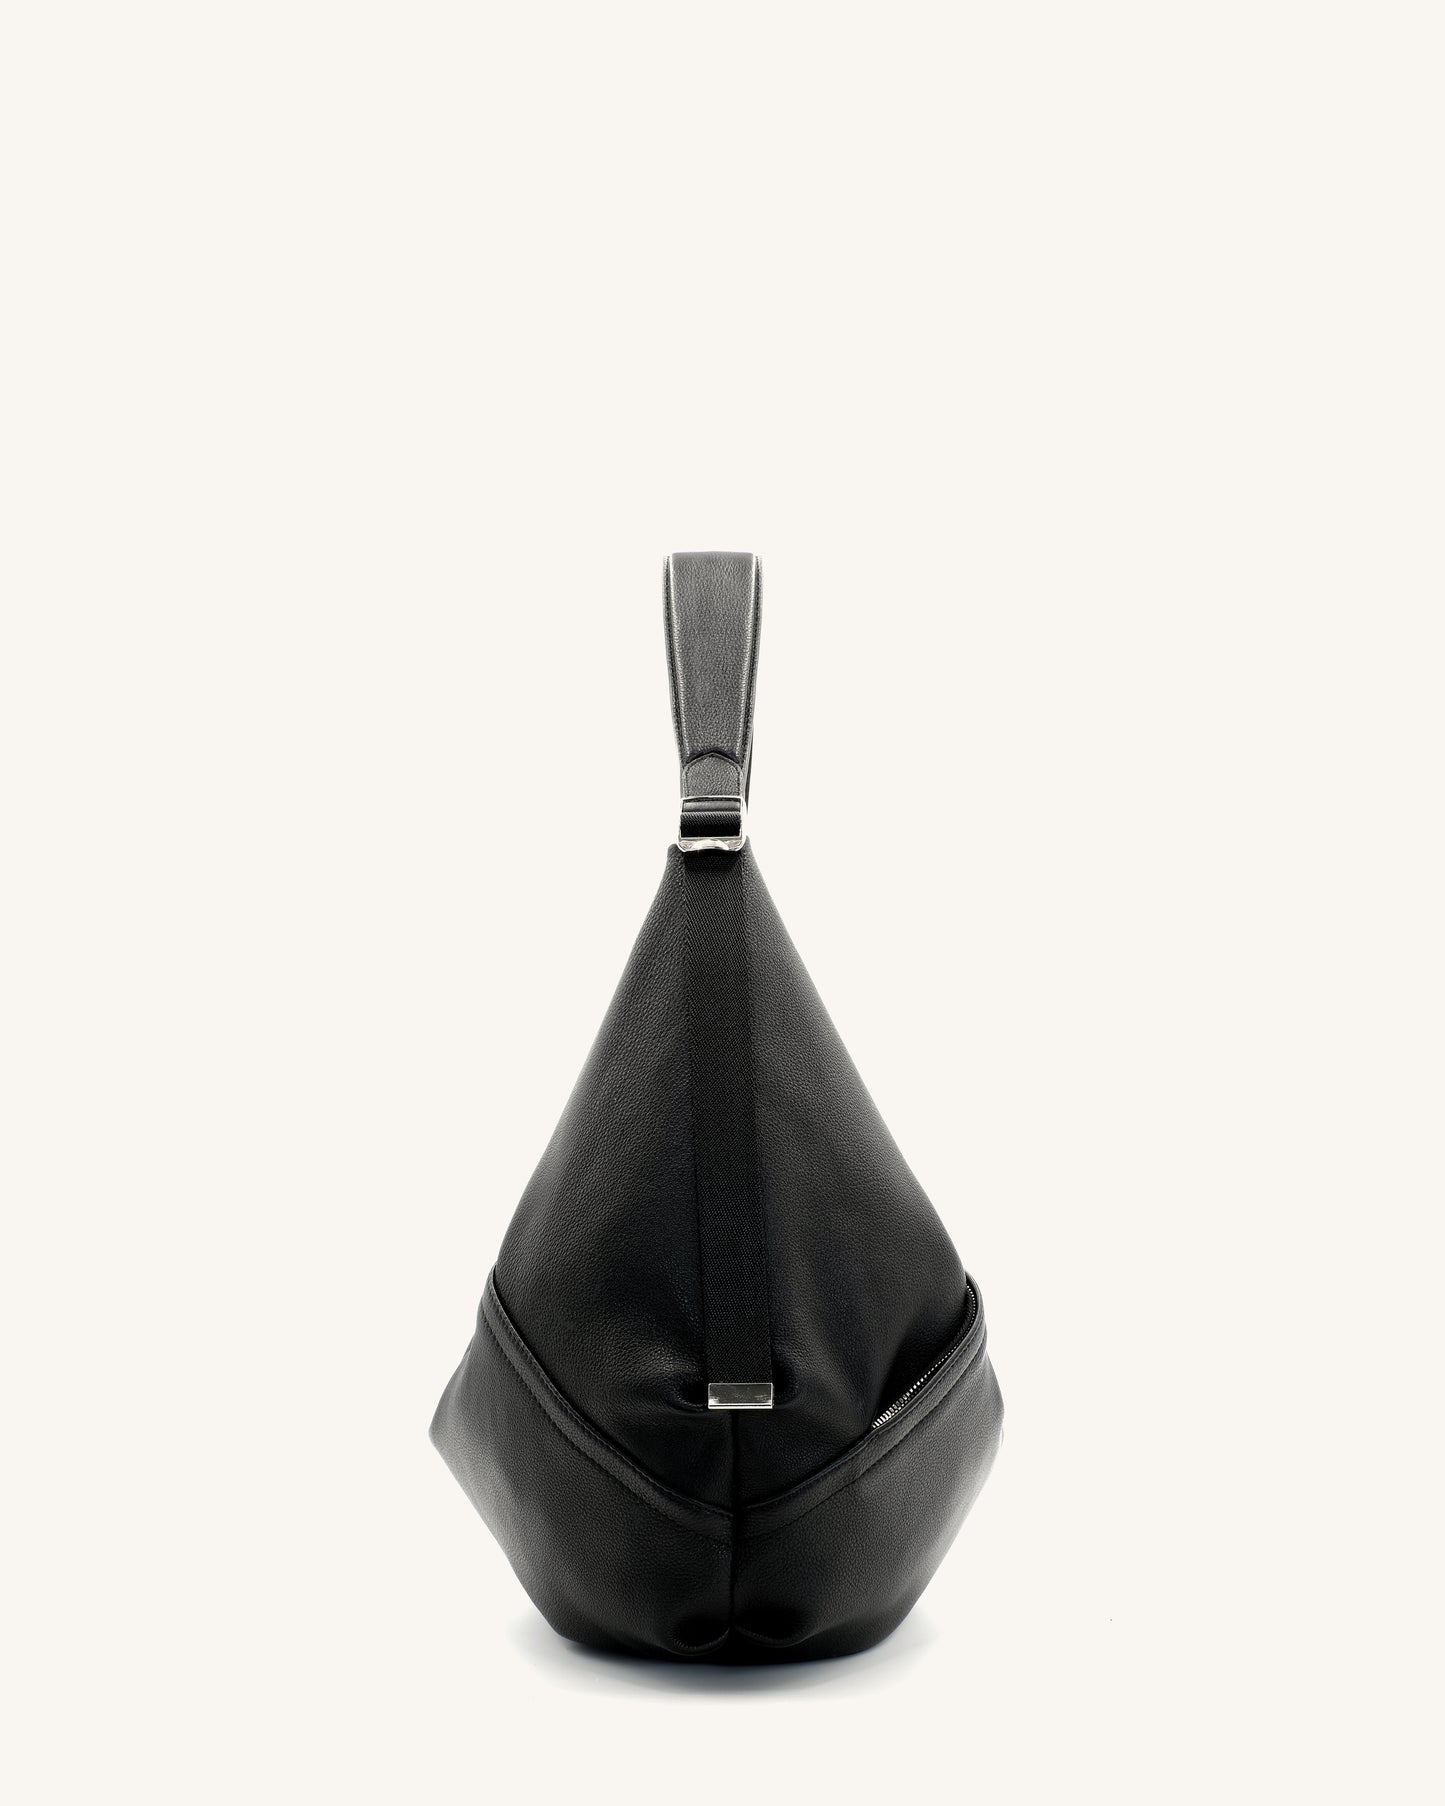 Hammock Bag - Black pebble leather